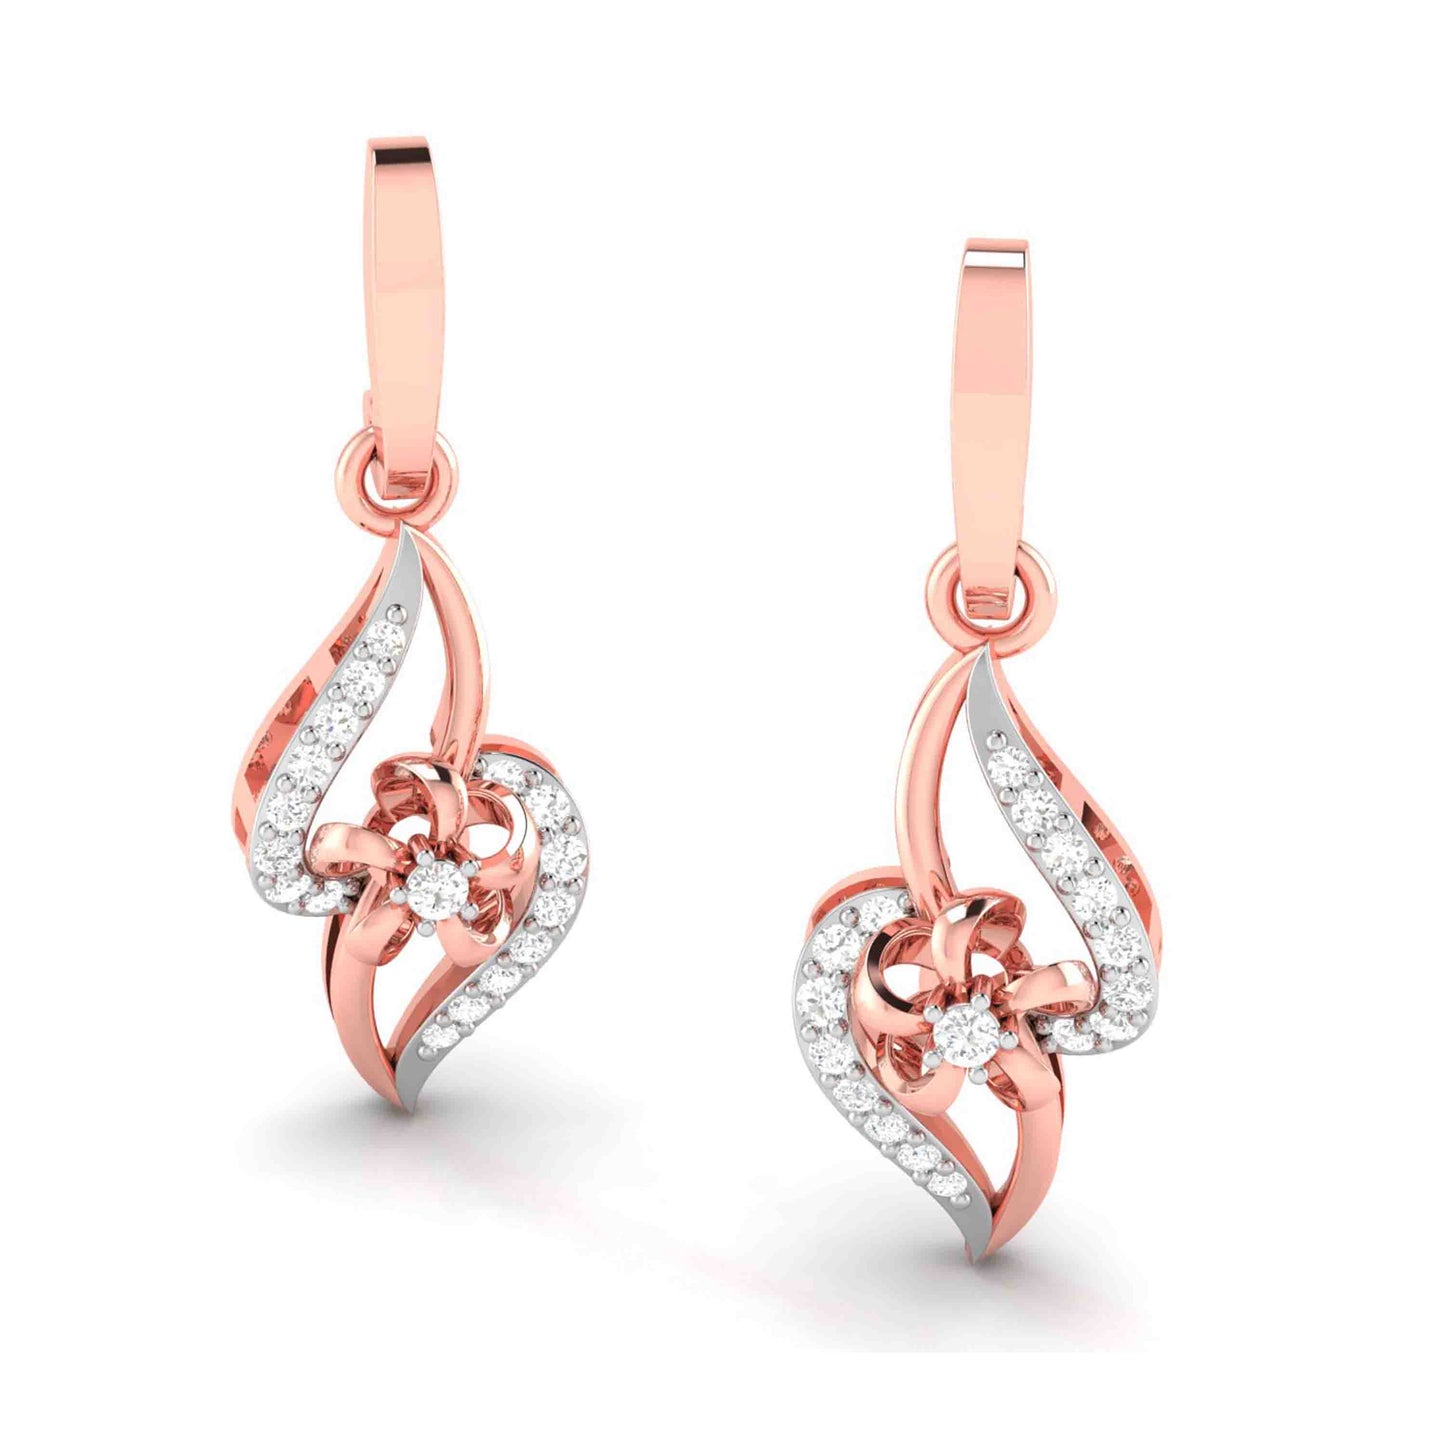 Daily wear earrings design Wallis Lab Grown Diamond Earrings Fiona Diamonds